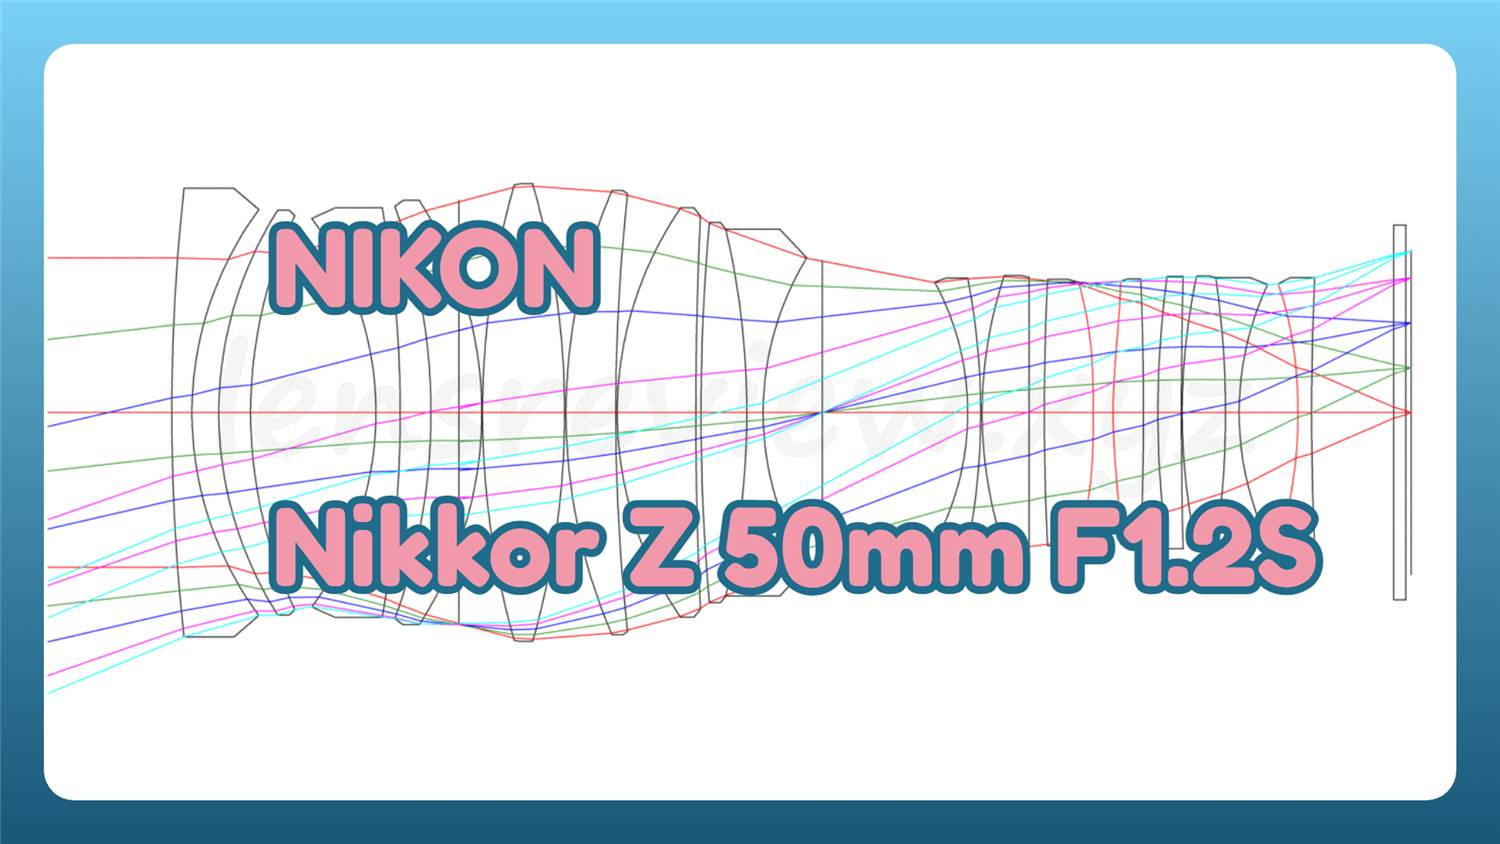 レンズ性能評価】NIKON Nikkor Z 50mm F1.2S -分析079 LENS Review